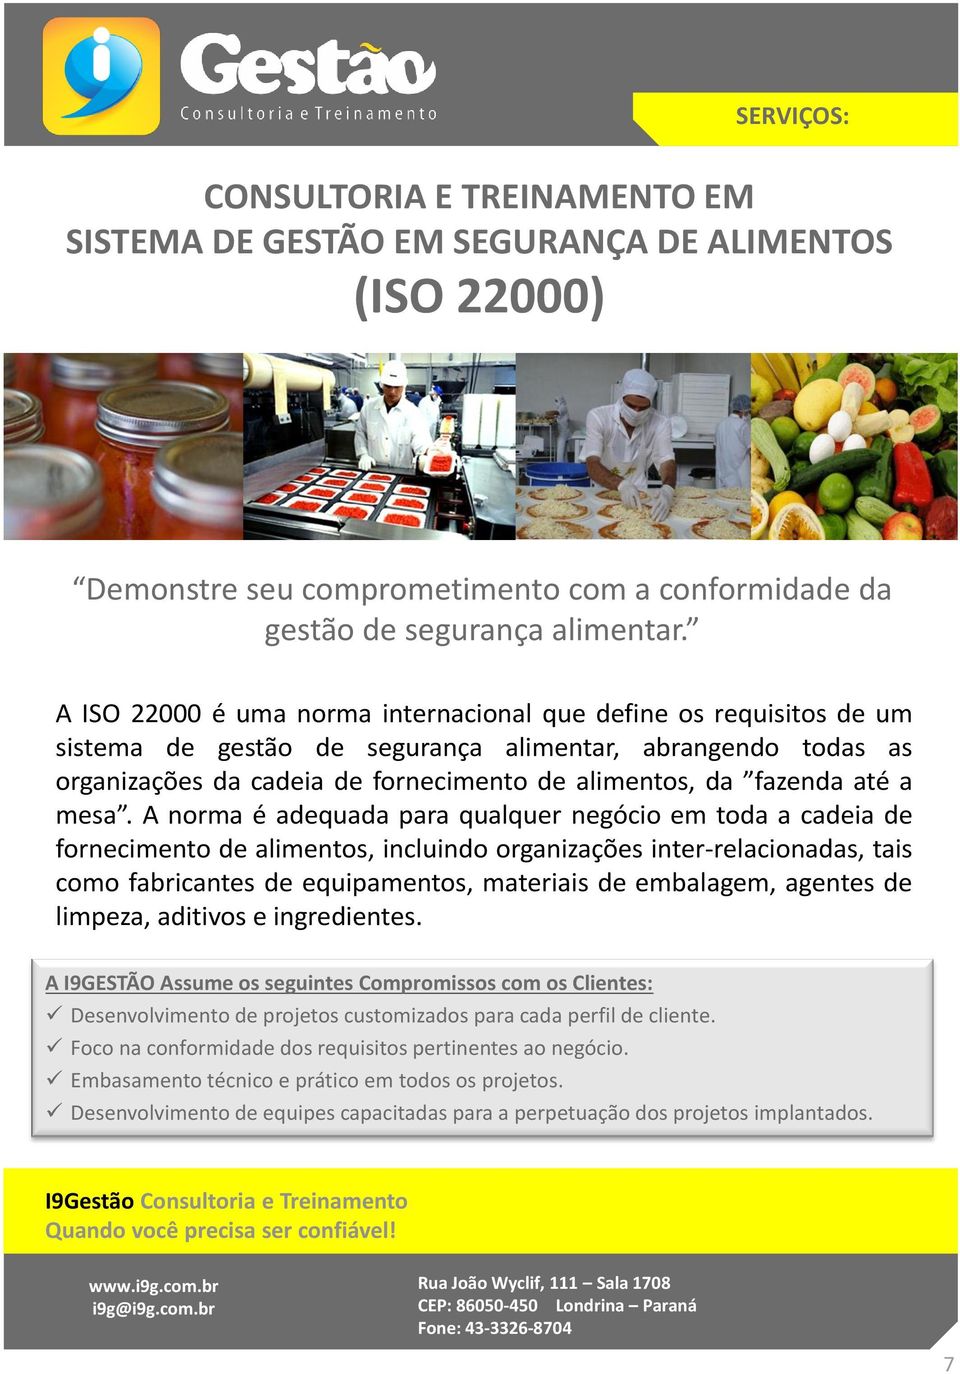 A ISO 22000 é uma norma internacional que define os requisitos de um sistema de gestão de segurança alimentar, abrangendo todas as organizações da cadeia de